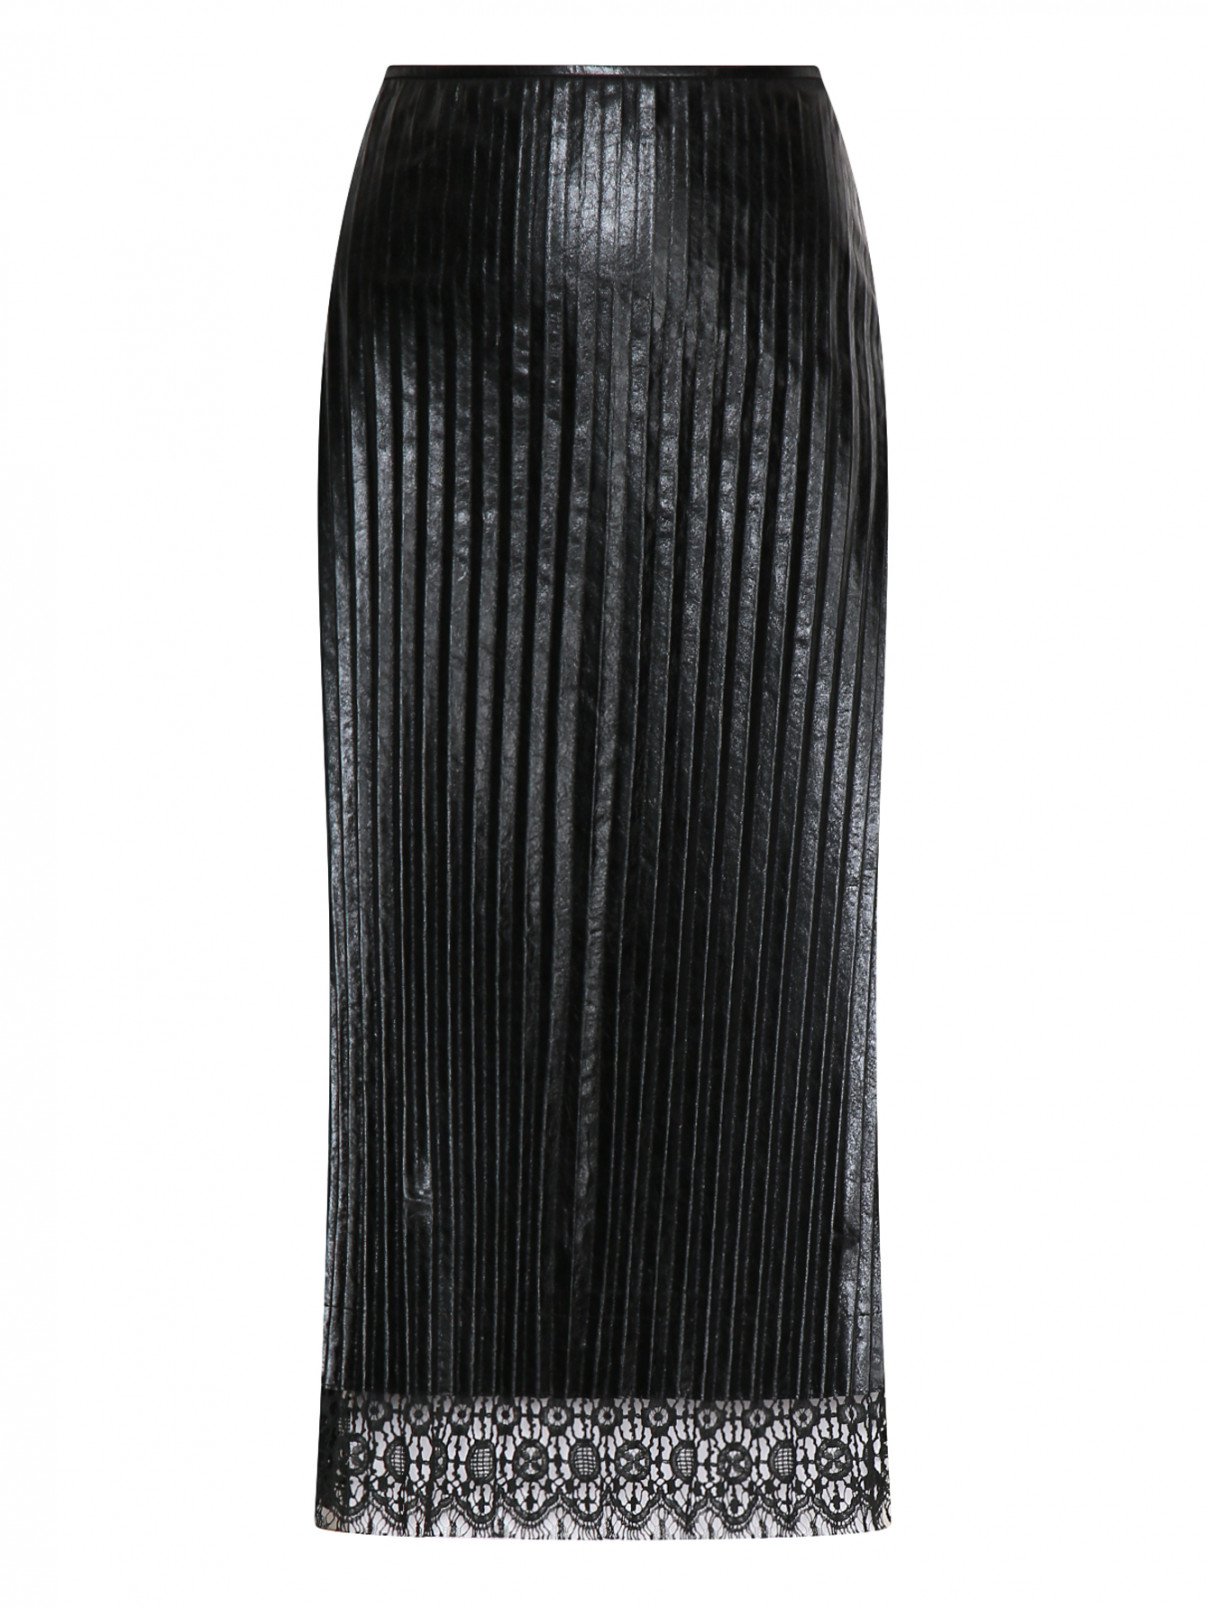 Юбка плиссированная из кожи Jil Sander  –  Общий вид  – Цвет:  Черный